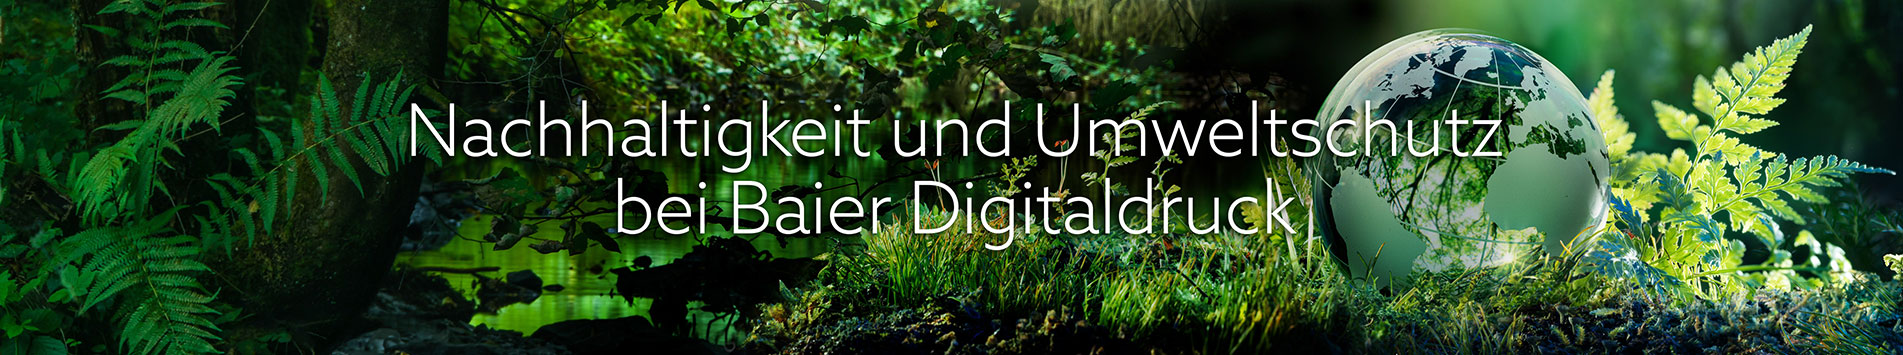 Nachhaltigeit und Umweltschutz bei Baier Digitaldruck